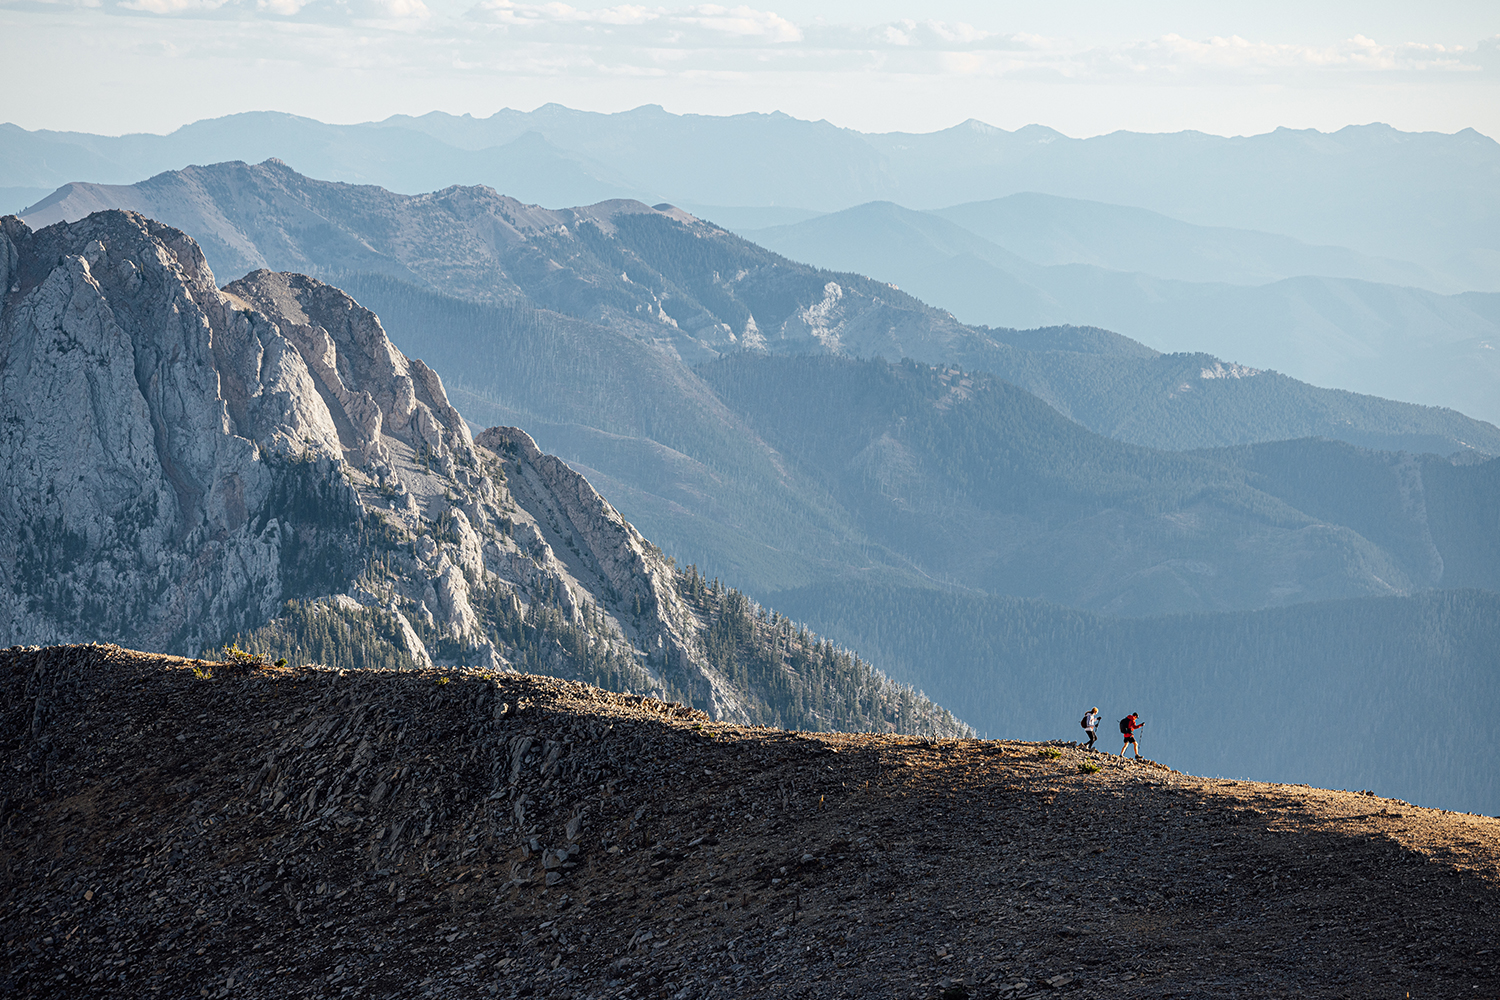 Two runners on ridgeline in the Bridger Mountain Range near Bozeman, MT.